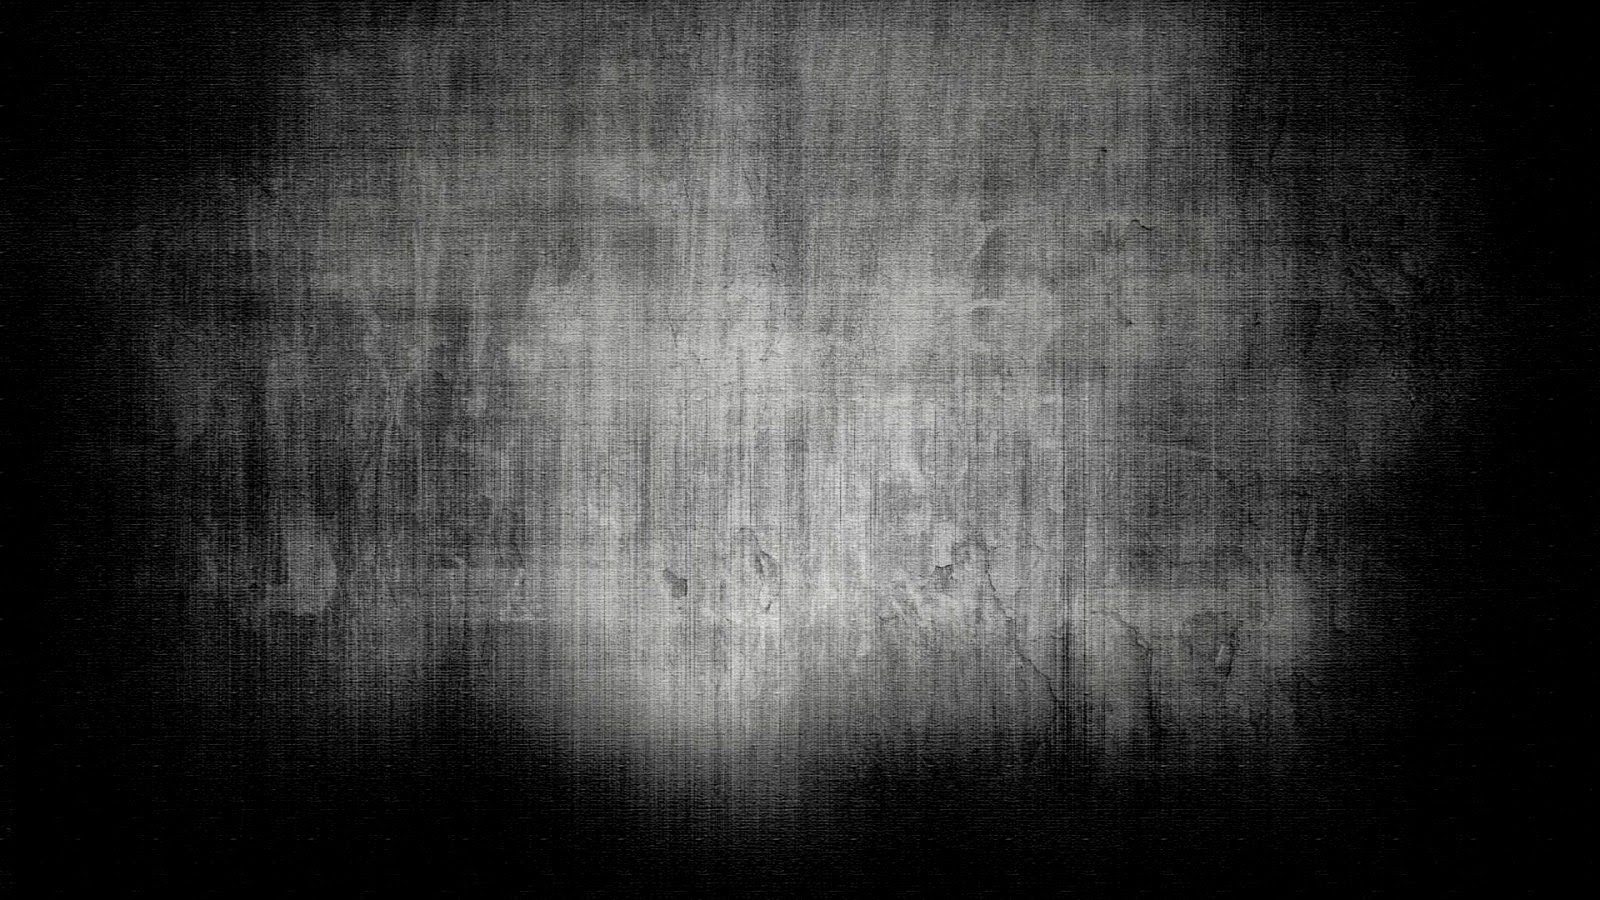 tapete hitam polos,schwarz,text,schwarz und weiß,dunkelheit,monochrome fotografie